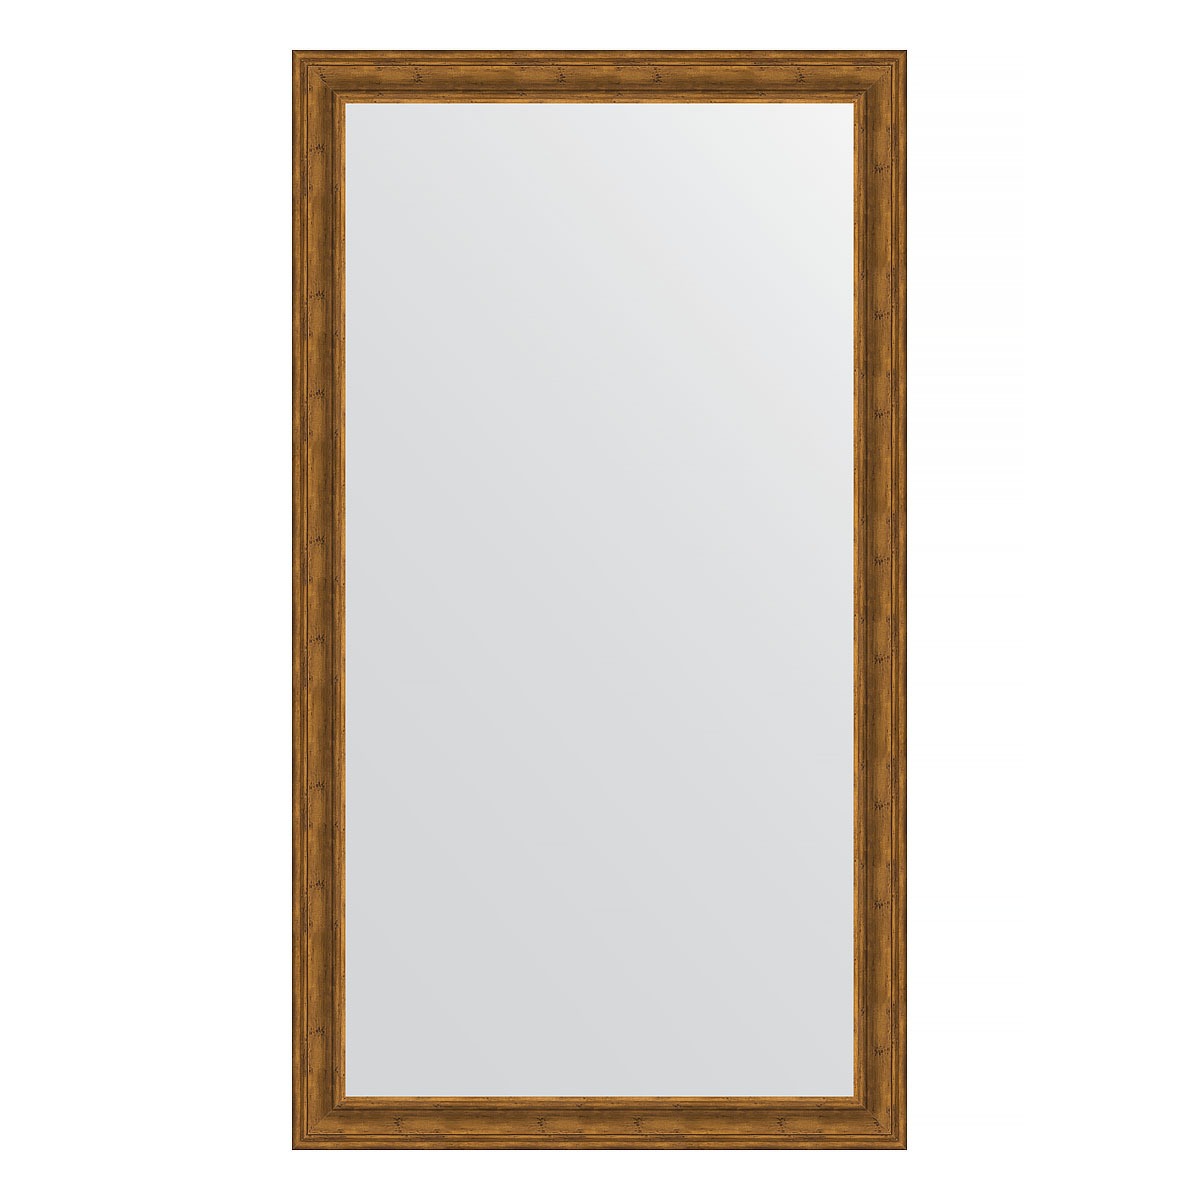 Зеркало напольное в багетной раме Evoform травленая бронза 99 мм 114x204 см зеркало напольное с гравировкой в багетной раме травленая бронза 99 мм 114x204 см